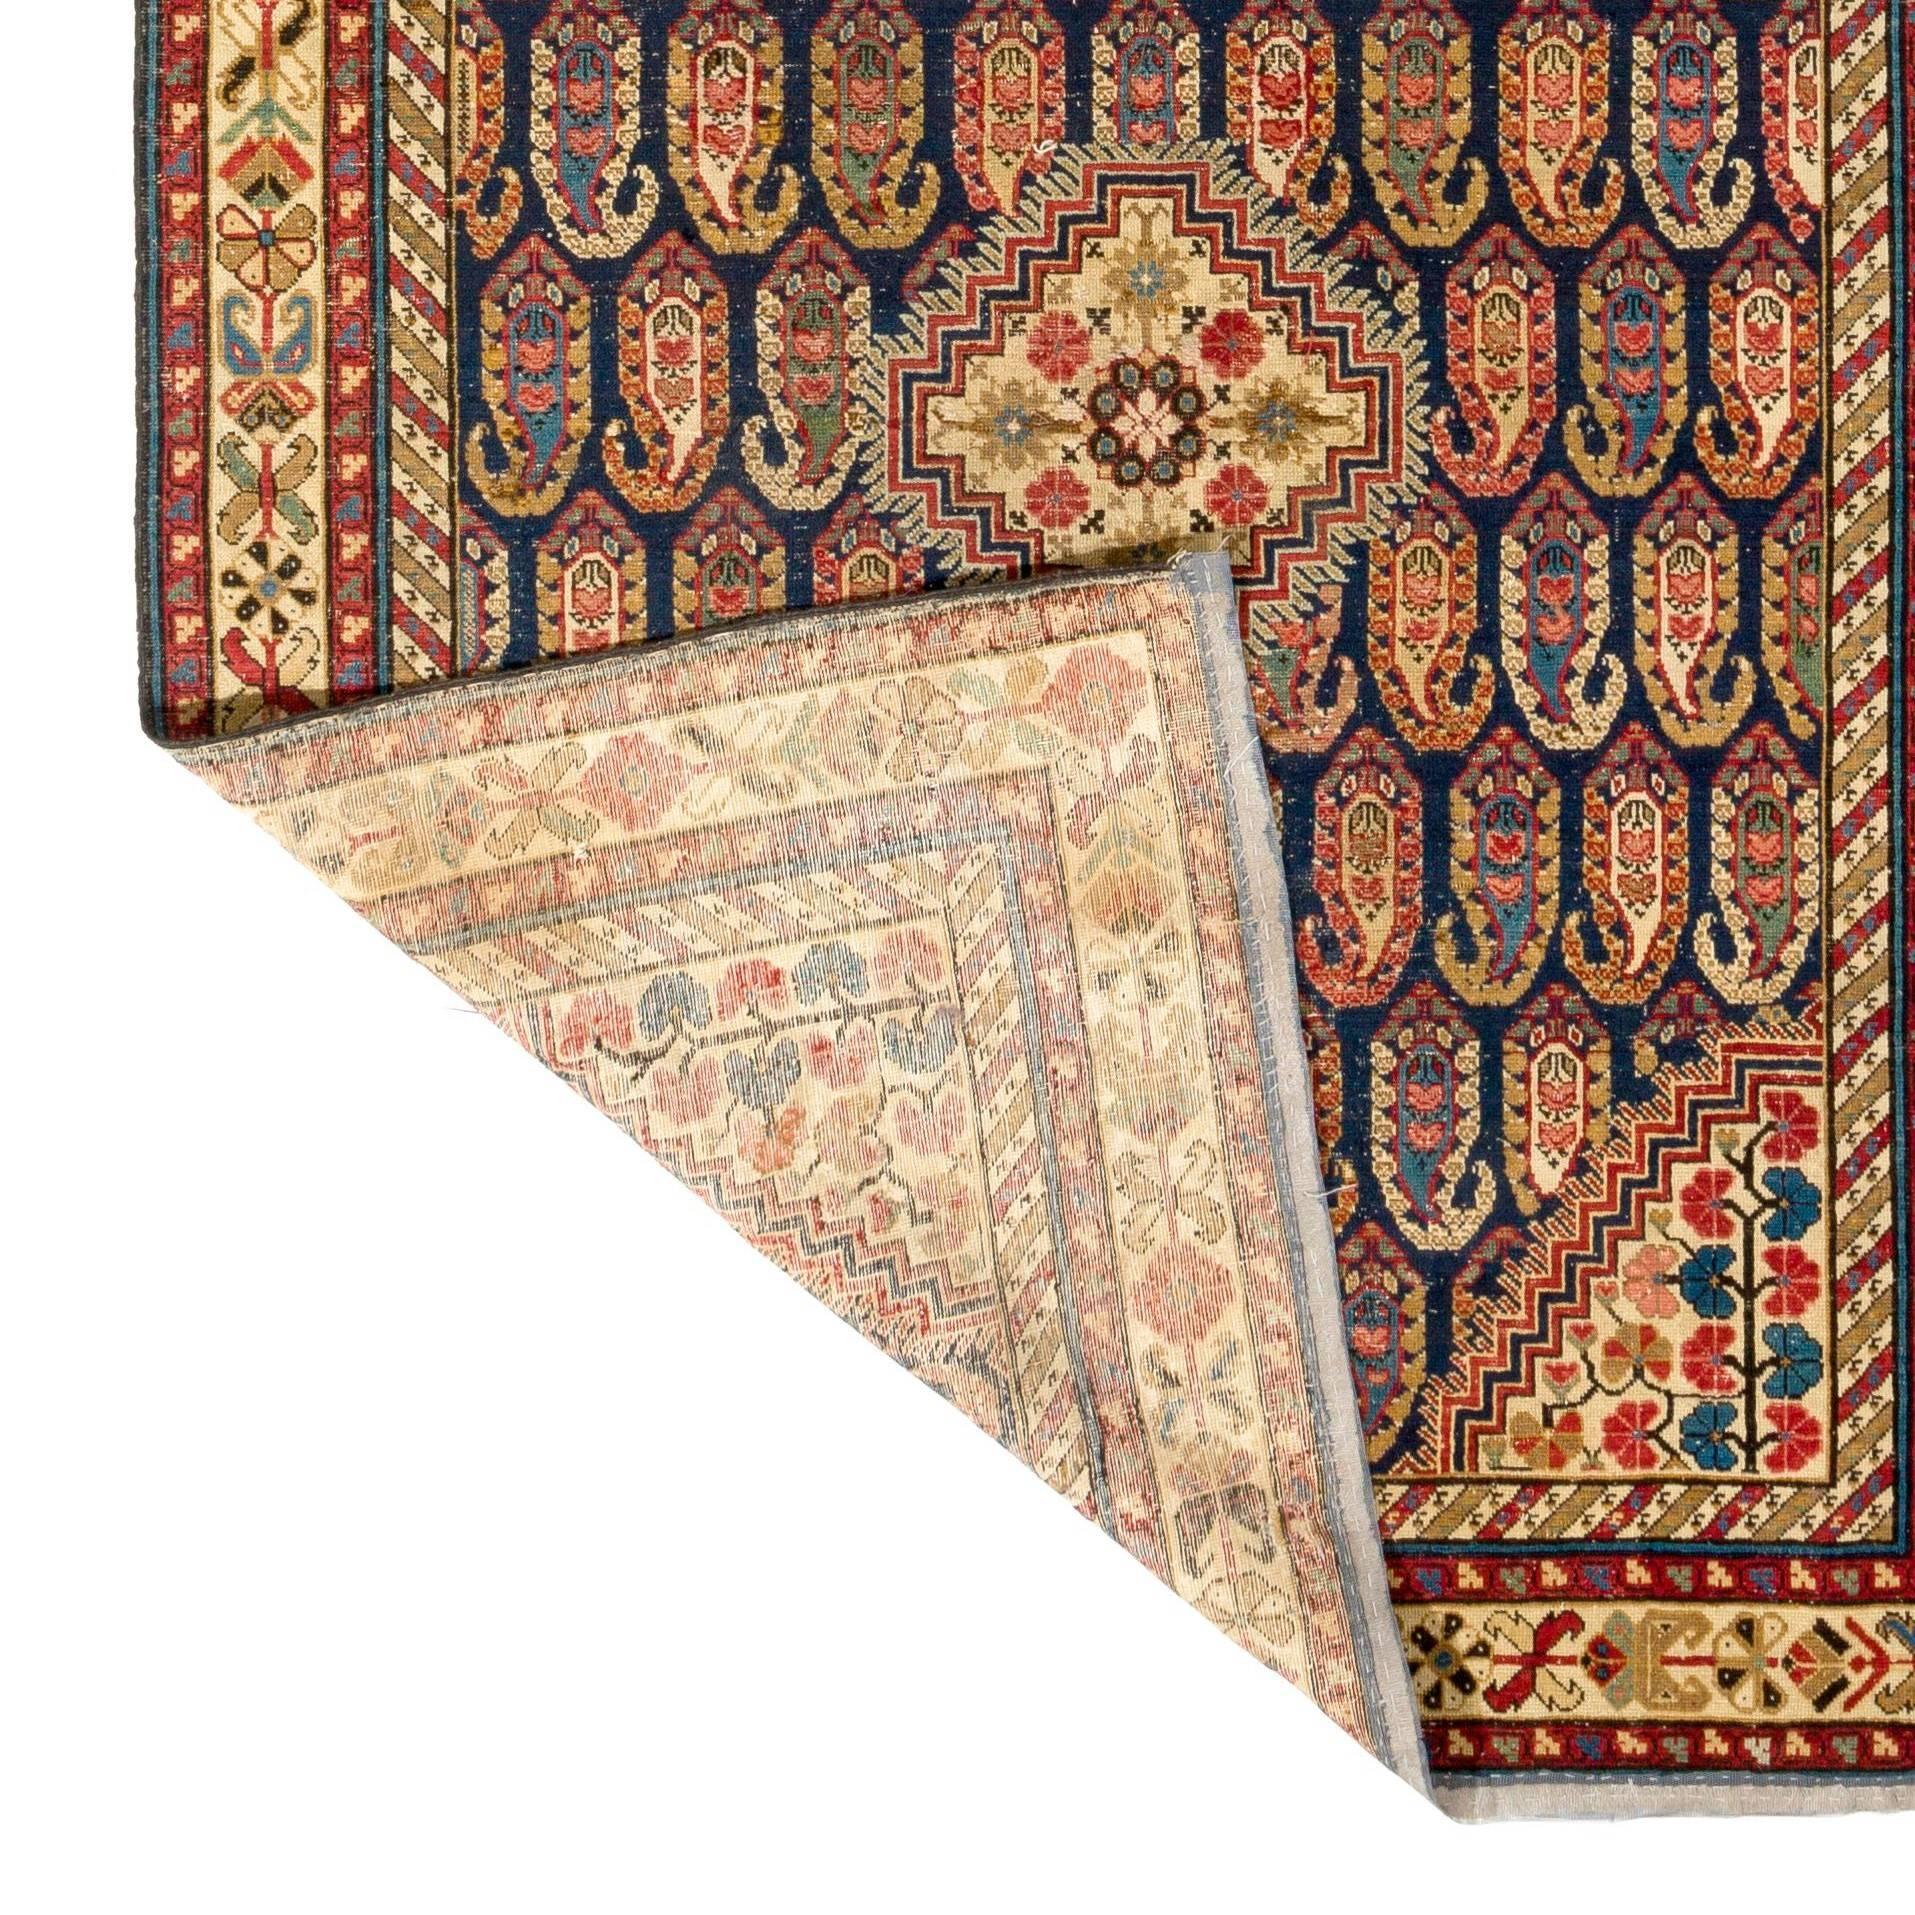 Kazak 4.6x12 ft Antique Caucasian Khila Rug, Ca 1800, Museum Quality Collectors Carpet For Sale